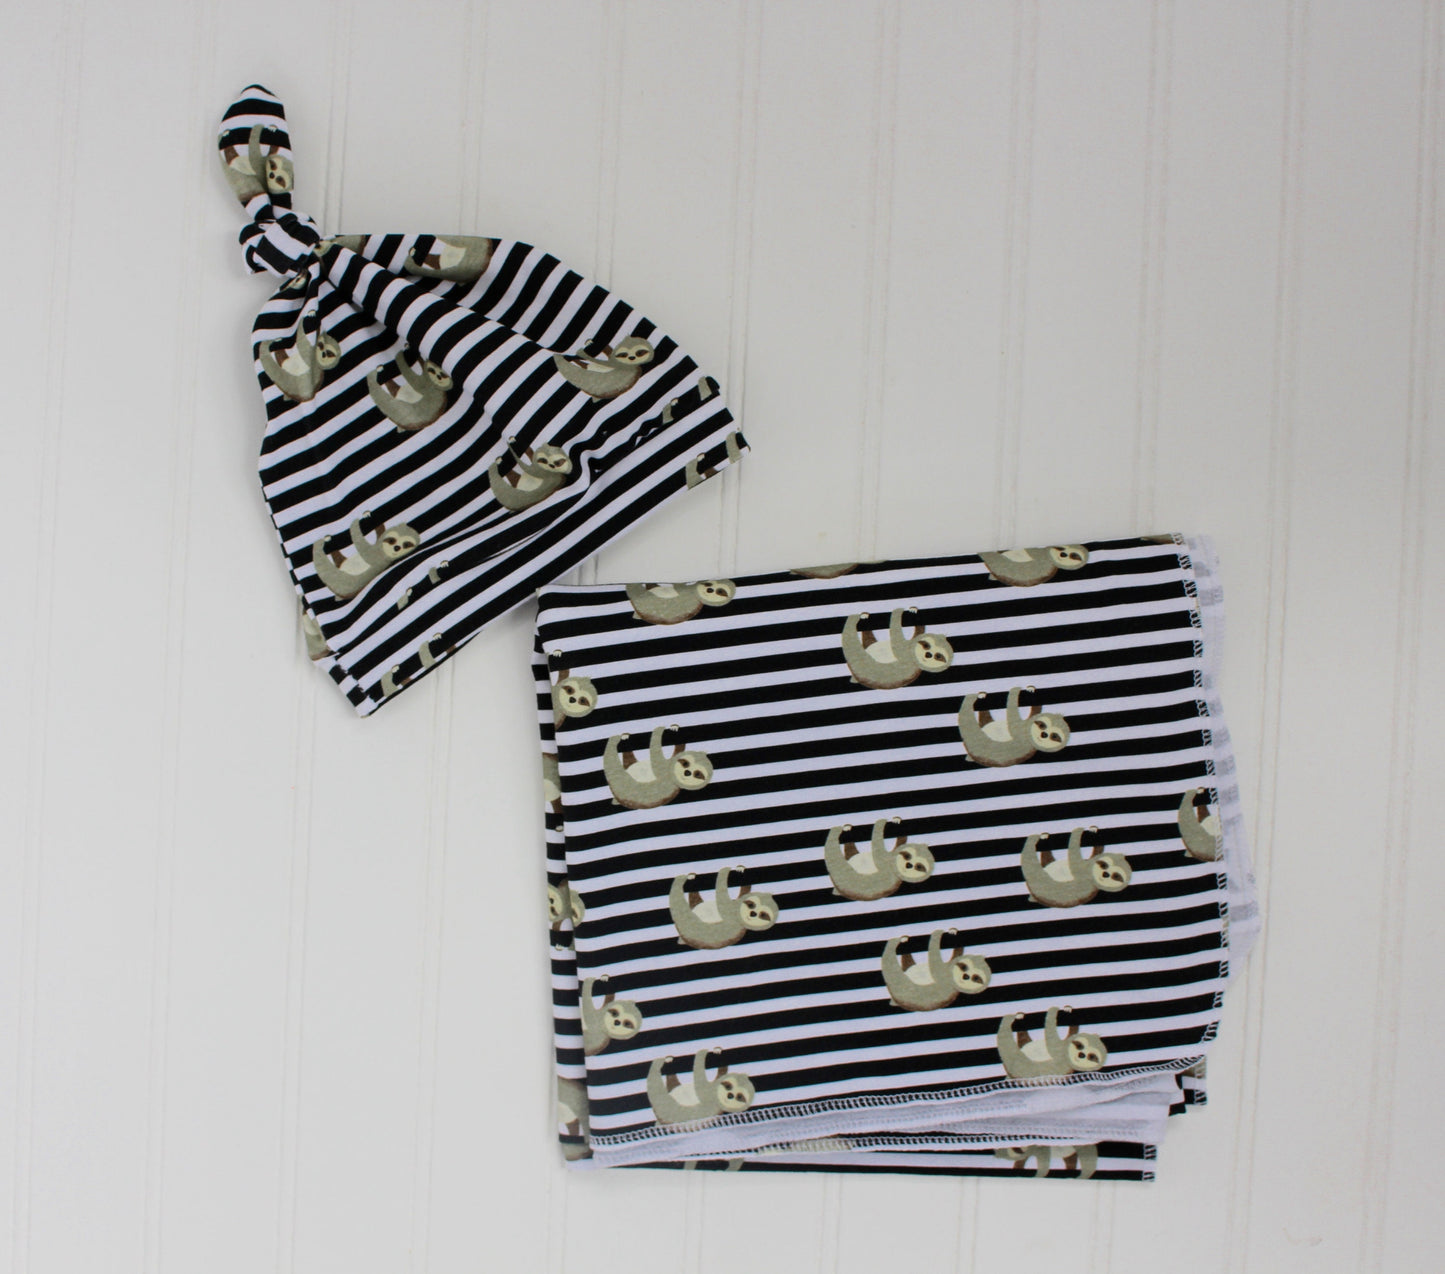 Swaddling Baby Blanket/Sloth Blanket/Black Stripe Blanket/Knit/Gift for Baby/Baby Boy/Boy Nursery/Baby Shower/Custom Fabric